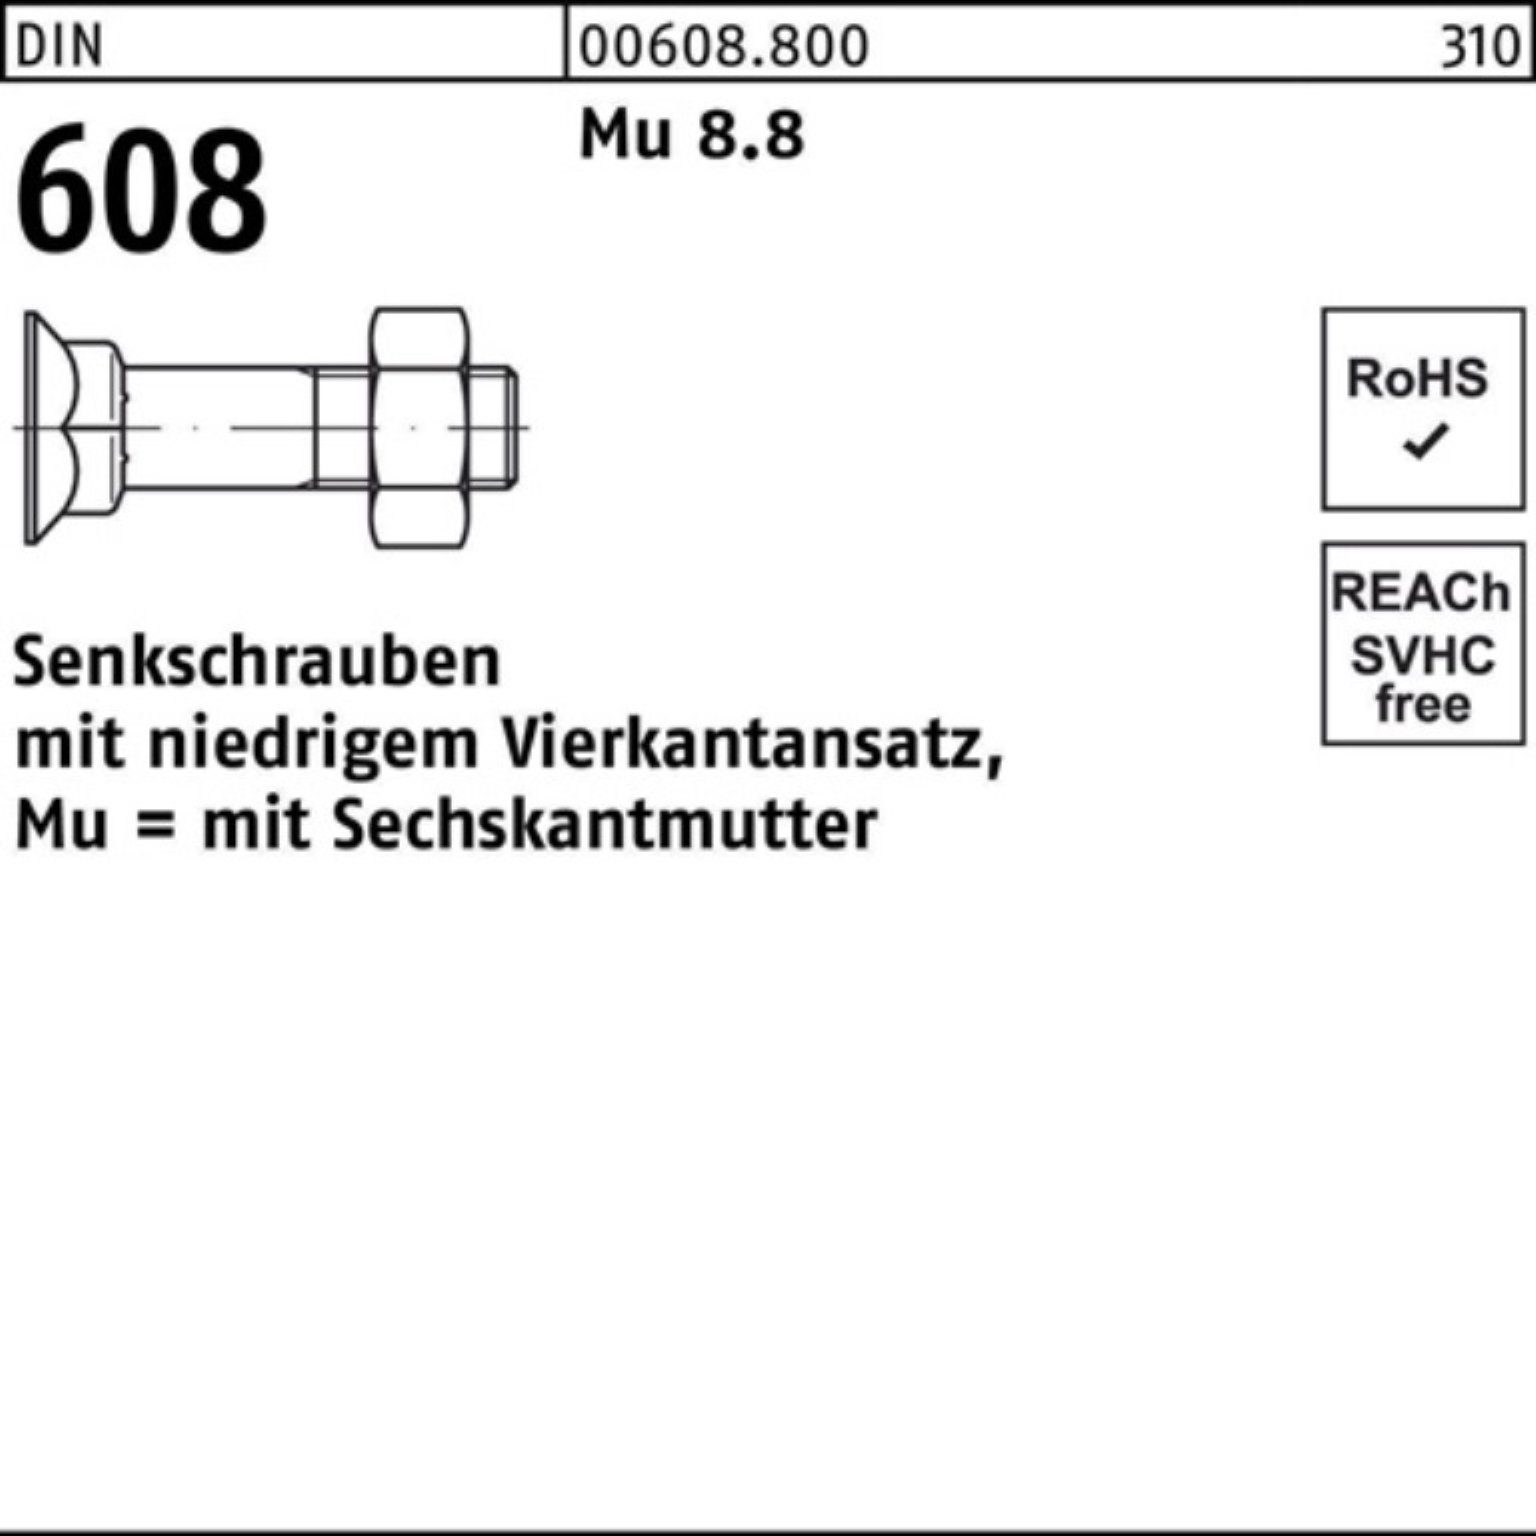 Reyher Senkschraube Pack M10x 100er DIN Mu 1 Senkschraube 8.8 4-ktansatz/6-ktmutter 608 60